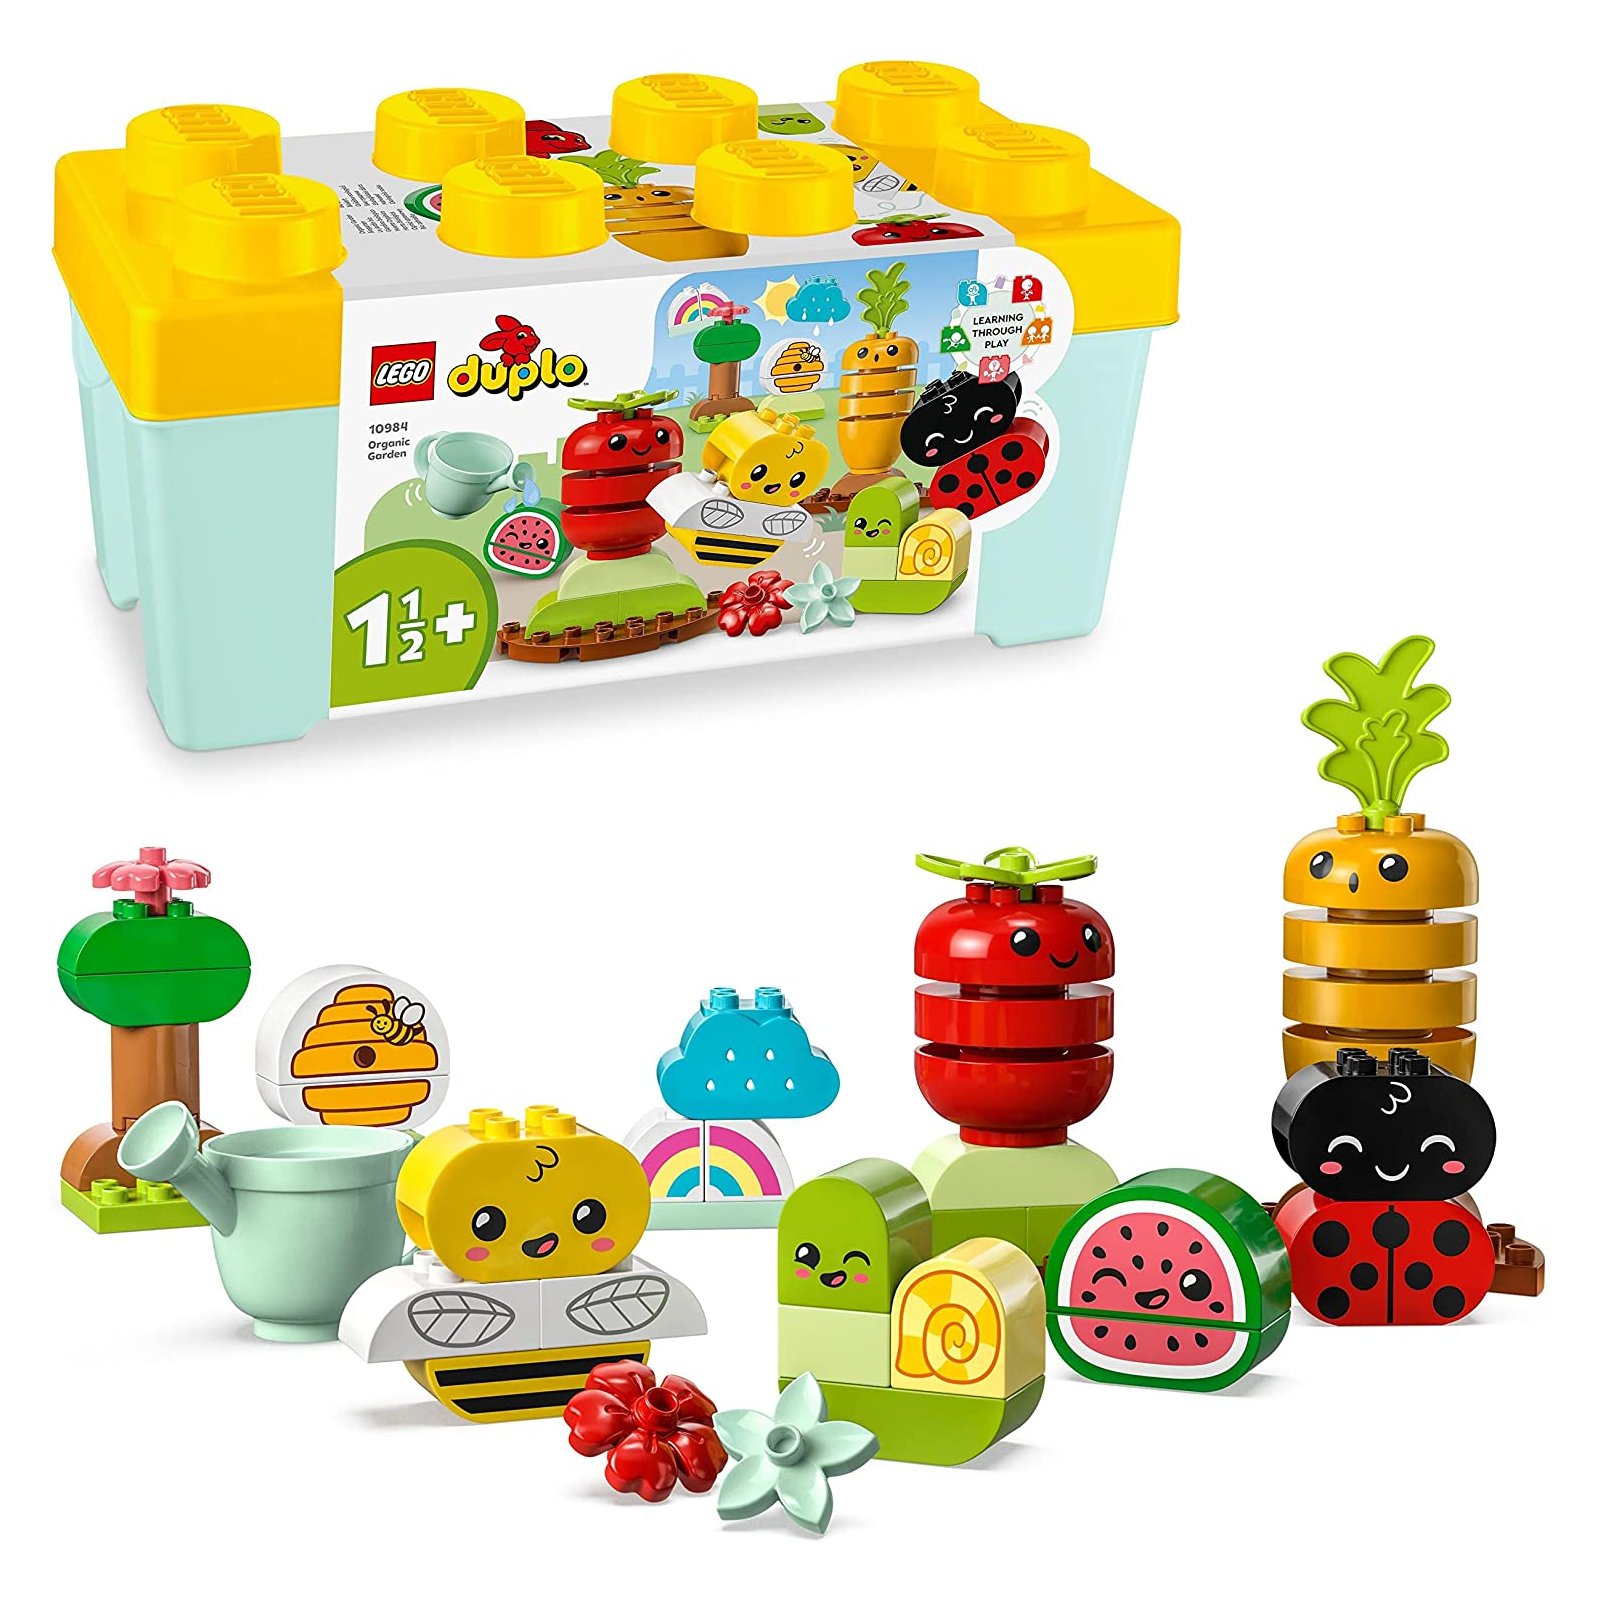 LEGO - Duplo - 10984 Biogarten